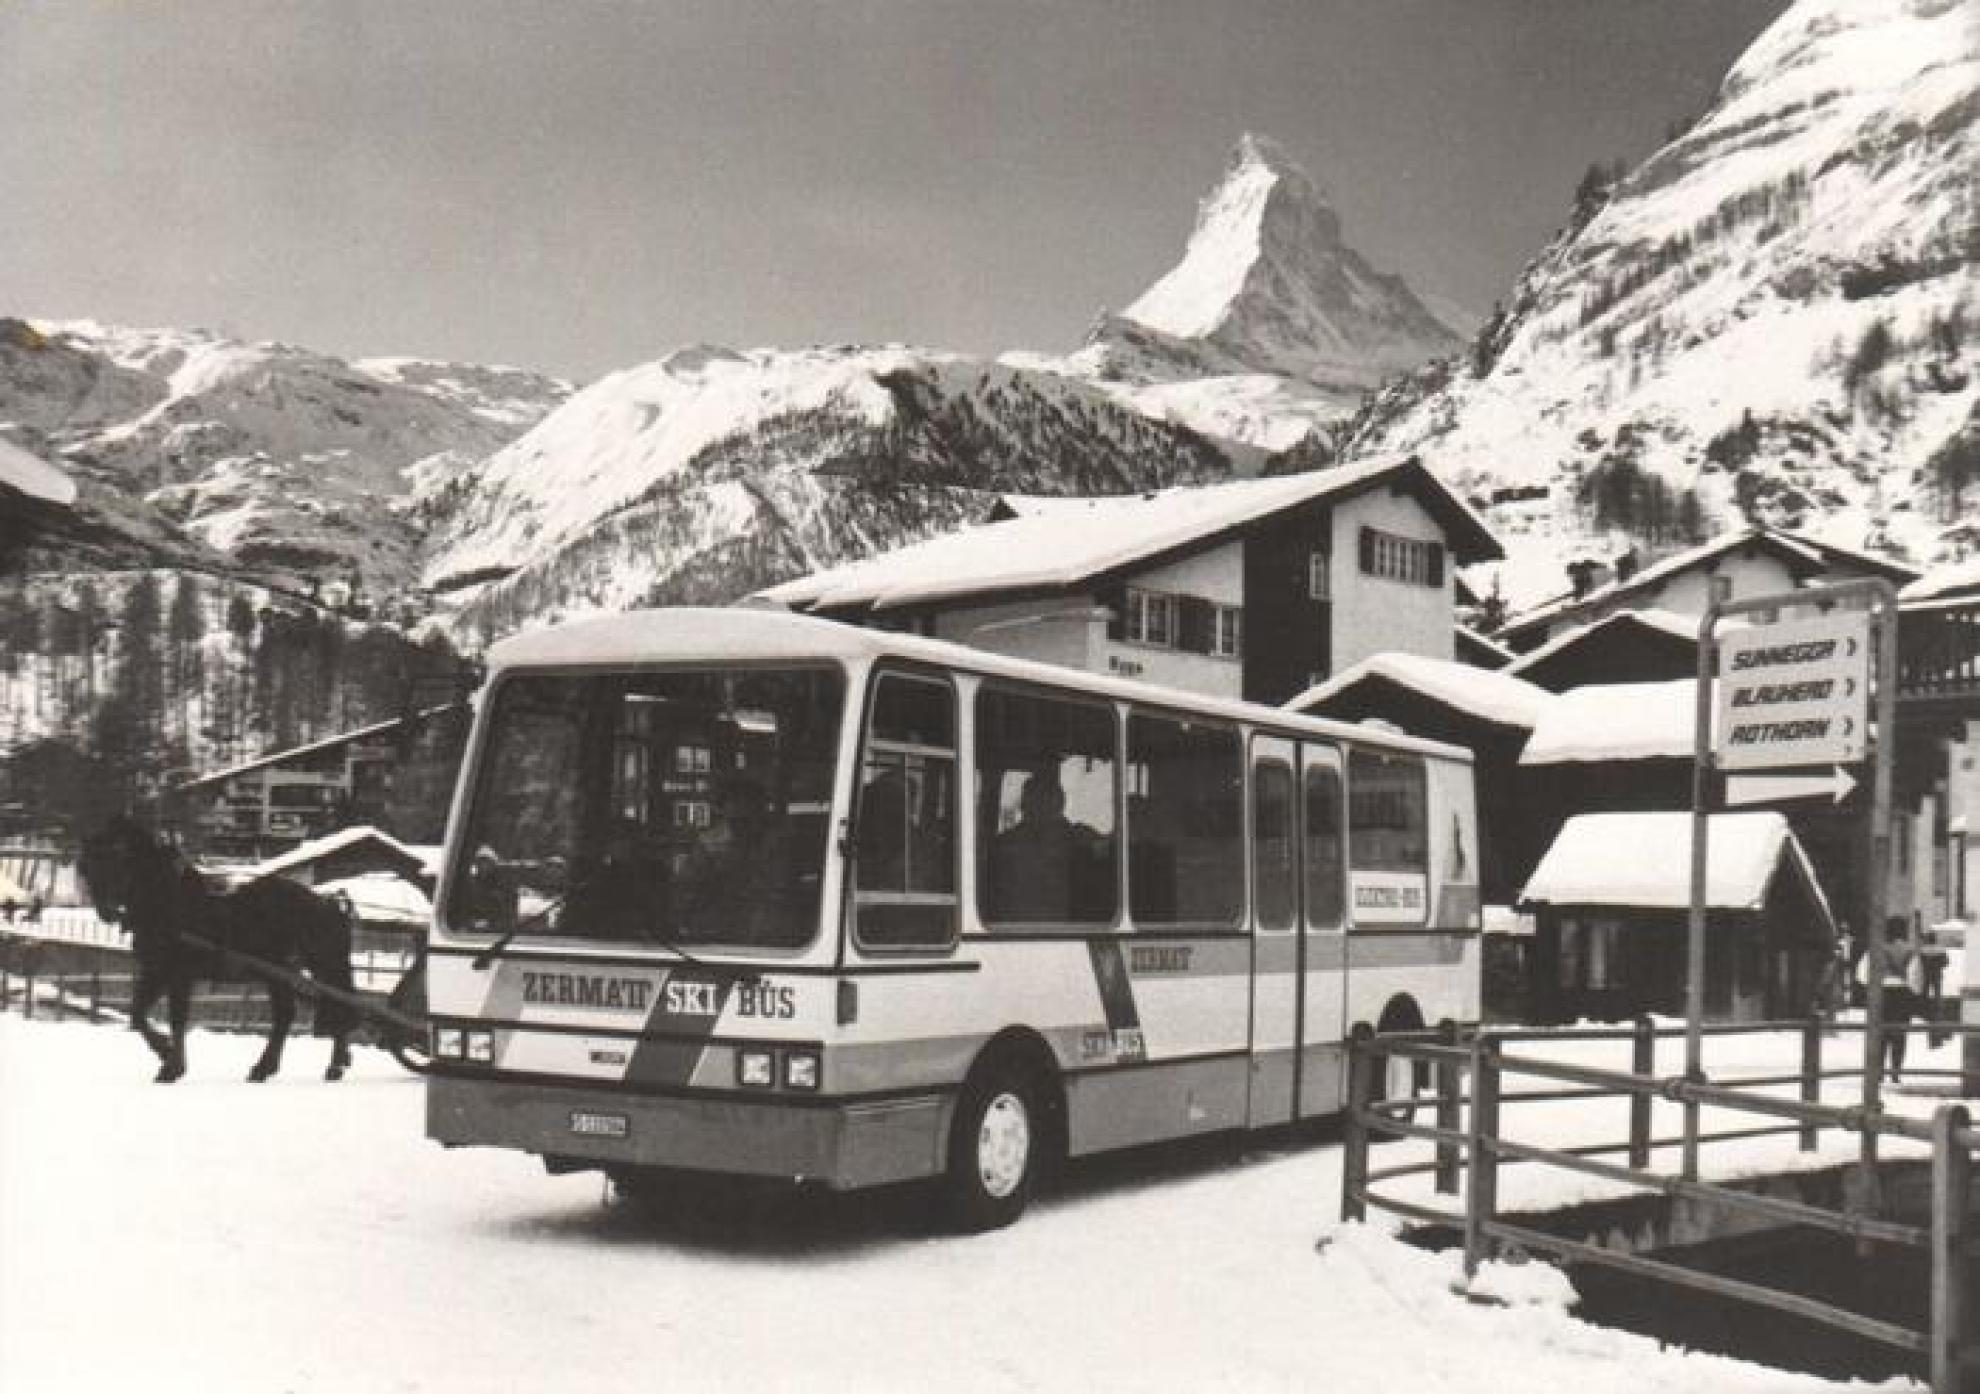 The first low-floor electric bus operating in Zermatt in 1988. (Source: Zermatt Tourismus)